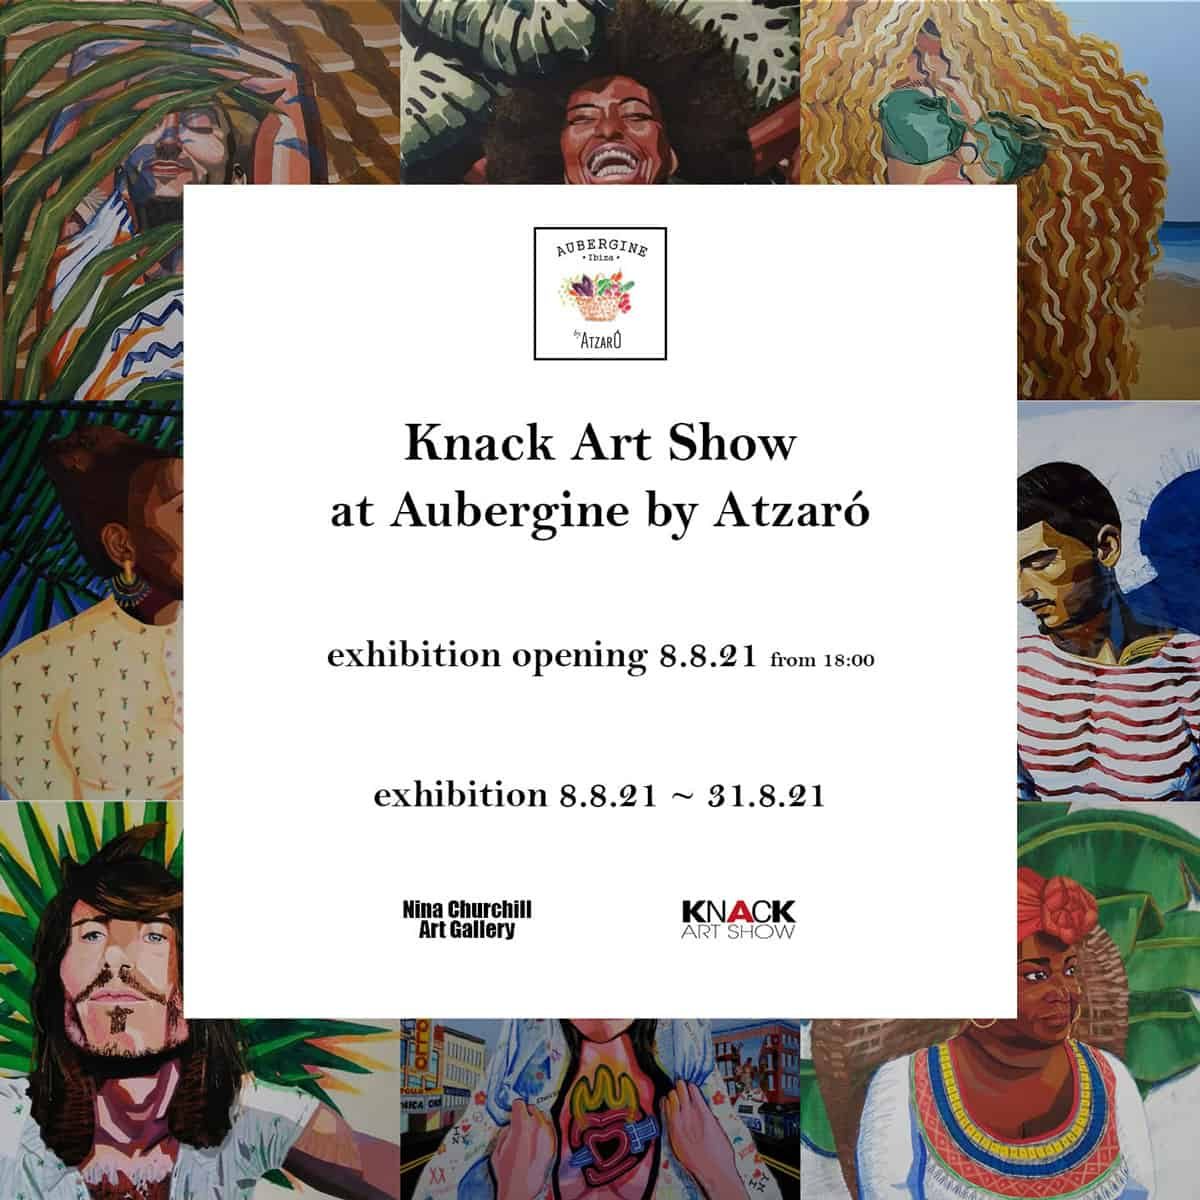 restaurant-aubergine-ibiza-2021-exposition-knack-art-show-welcometoibiza